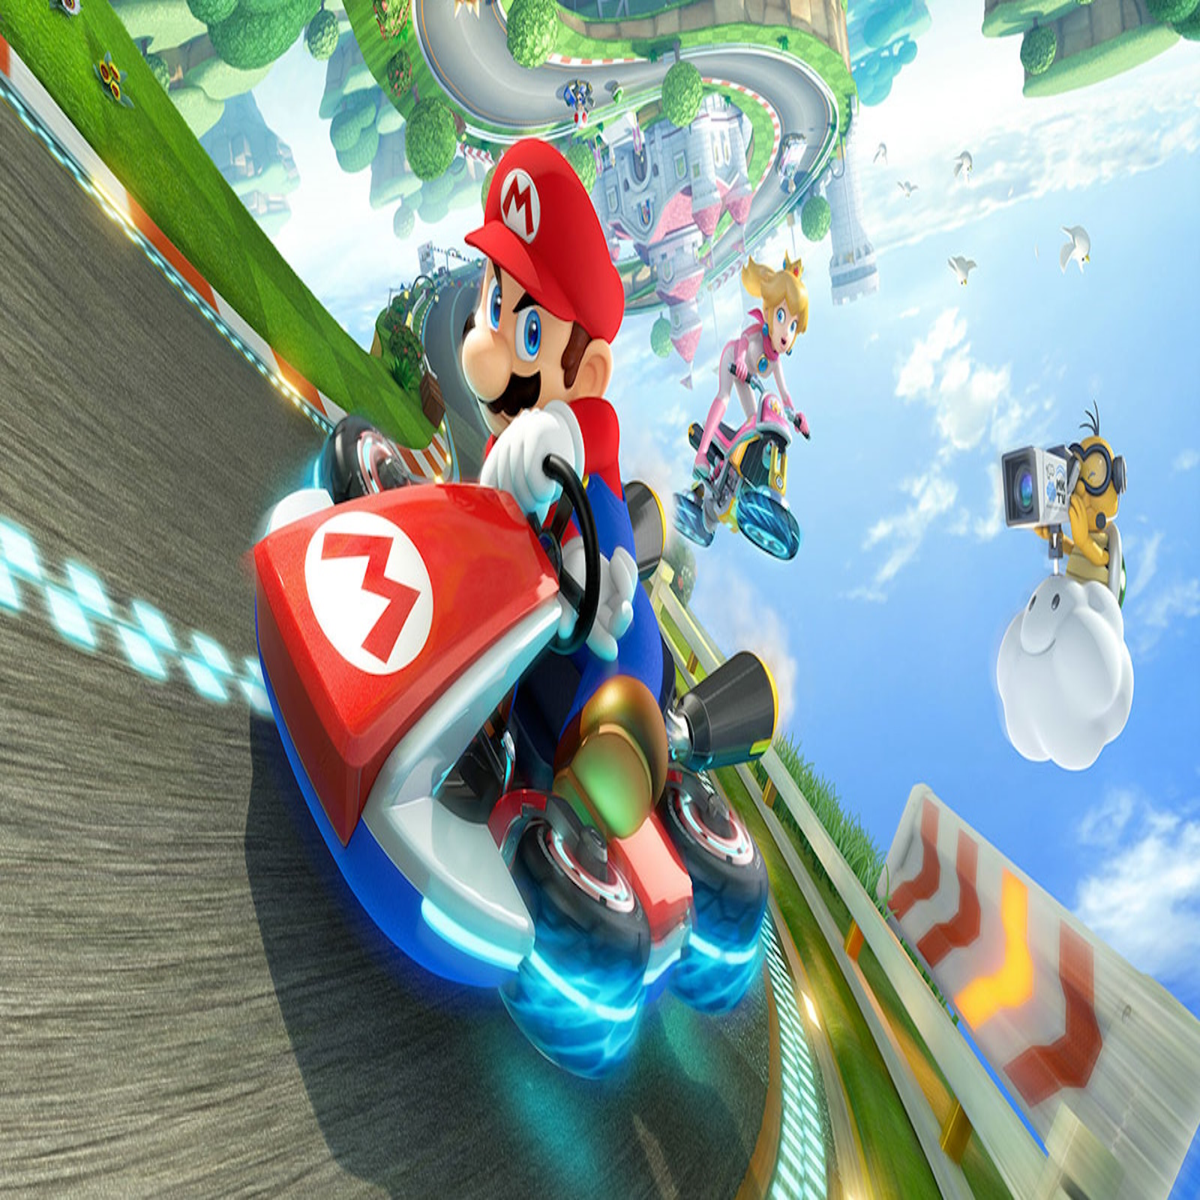 Mario Kart Wii - Full Game Walkthrough (2 Player) 